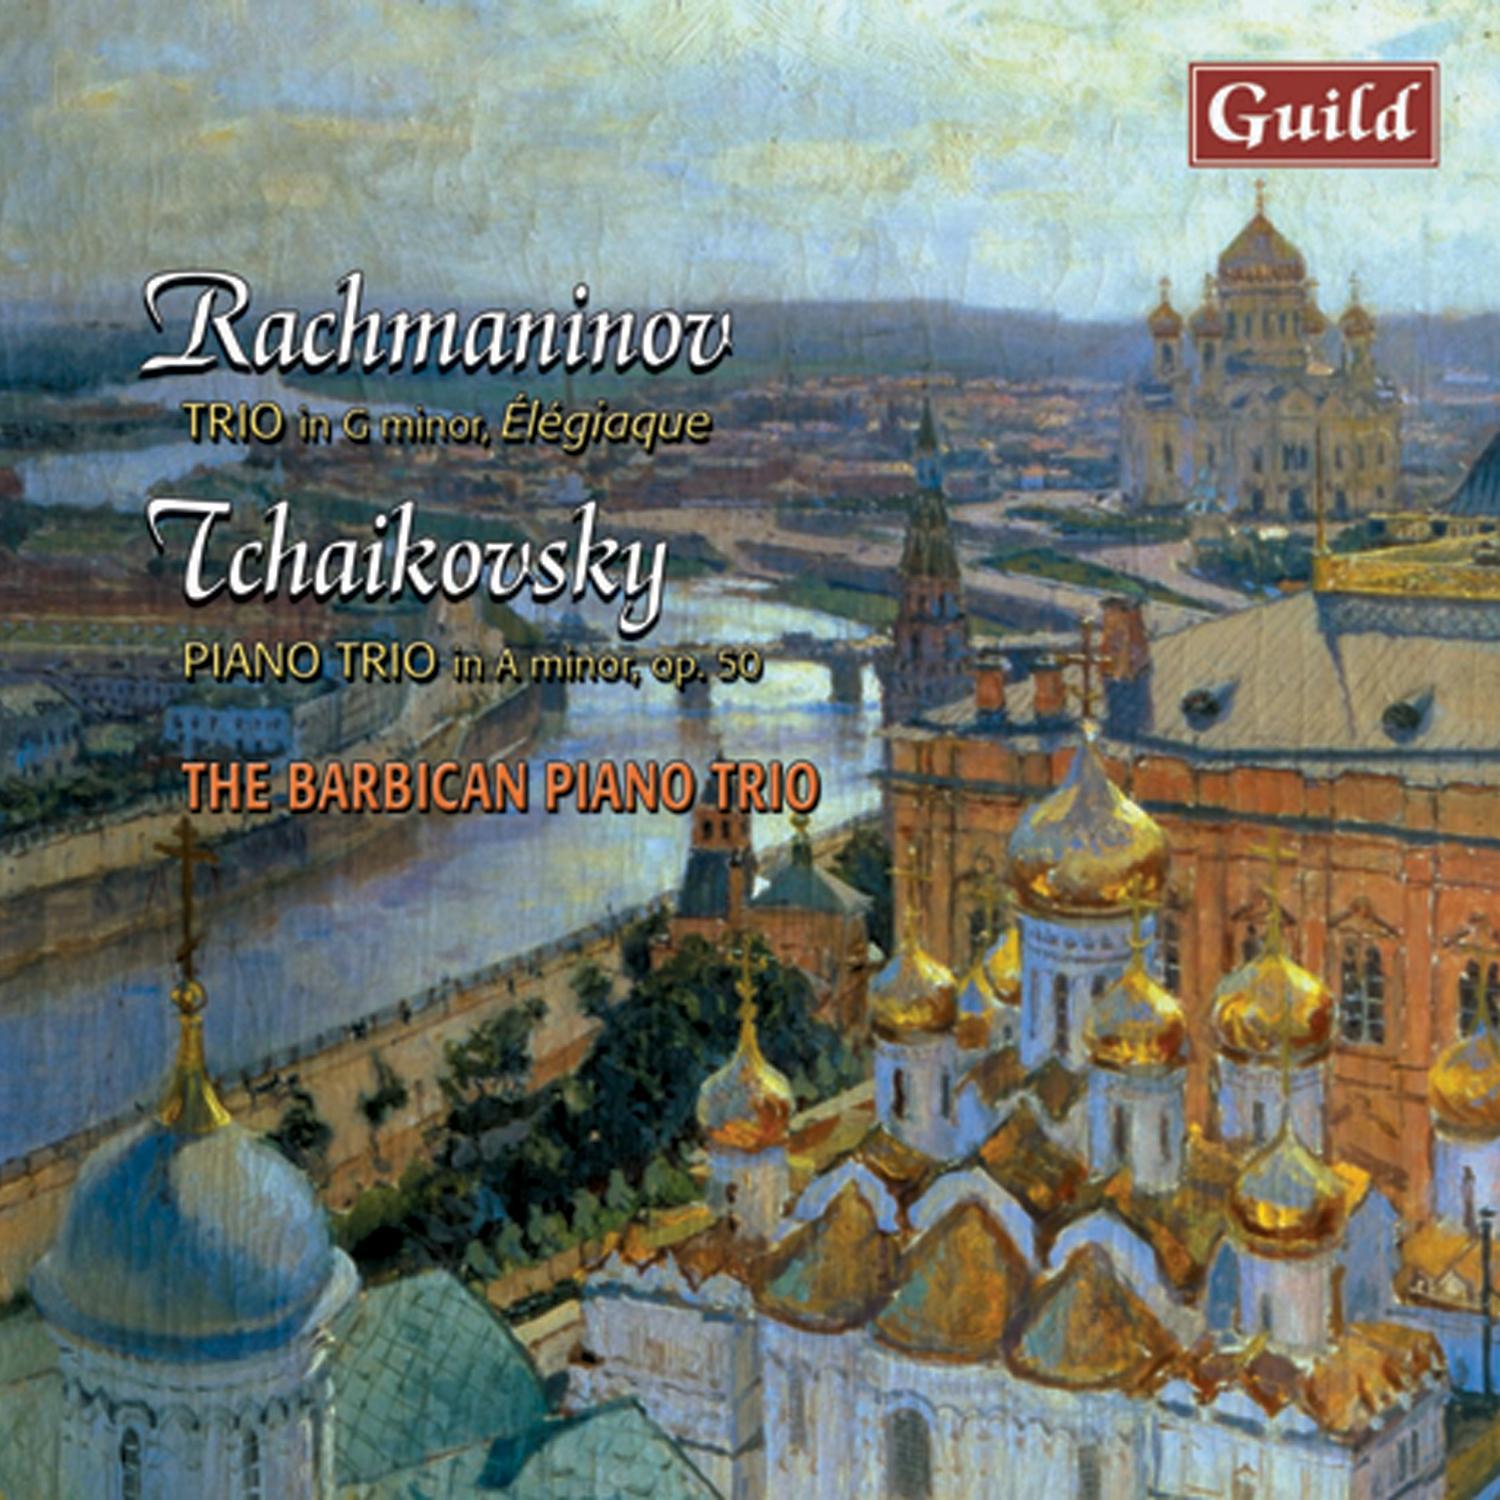 Rachmaninoff: Trio in G Minor, É le giaque  Tchaikovsky: Piano Trio in a Minor, Op. 50  Tema Con Variazioni